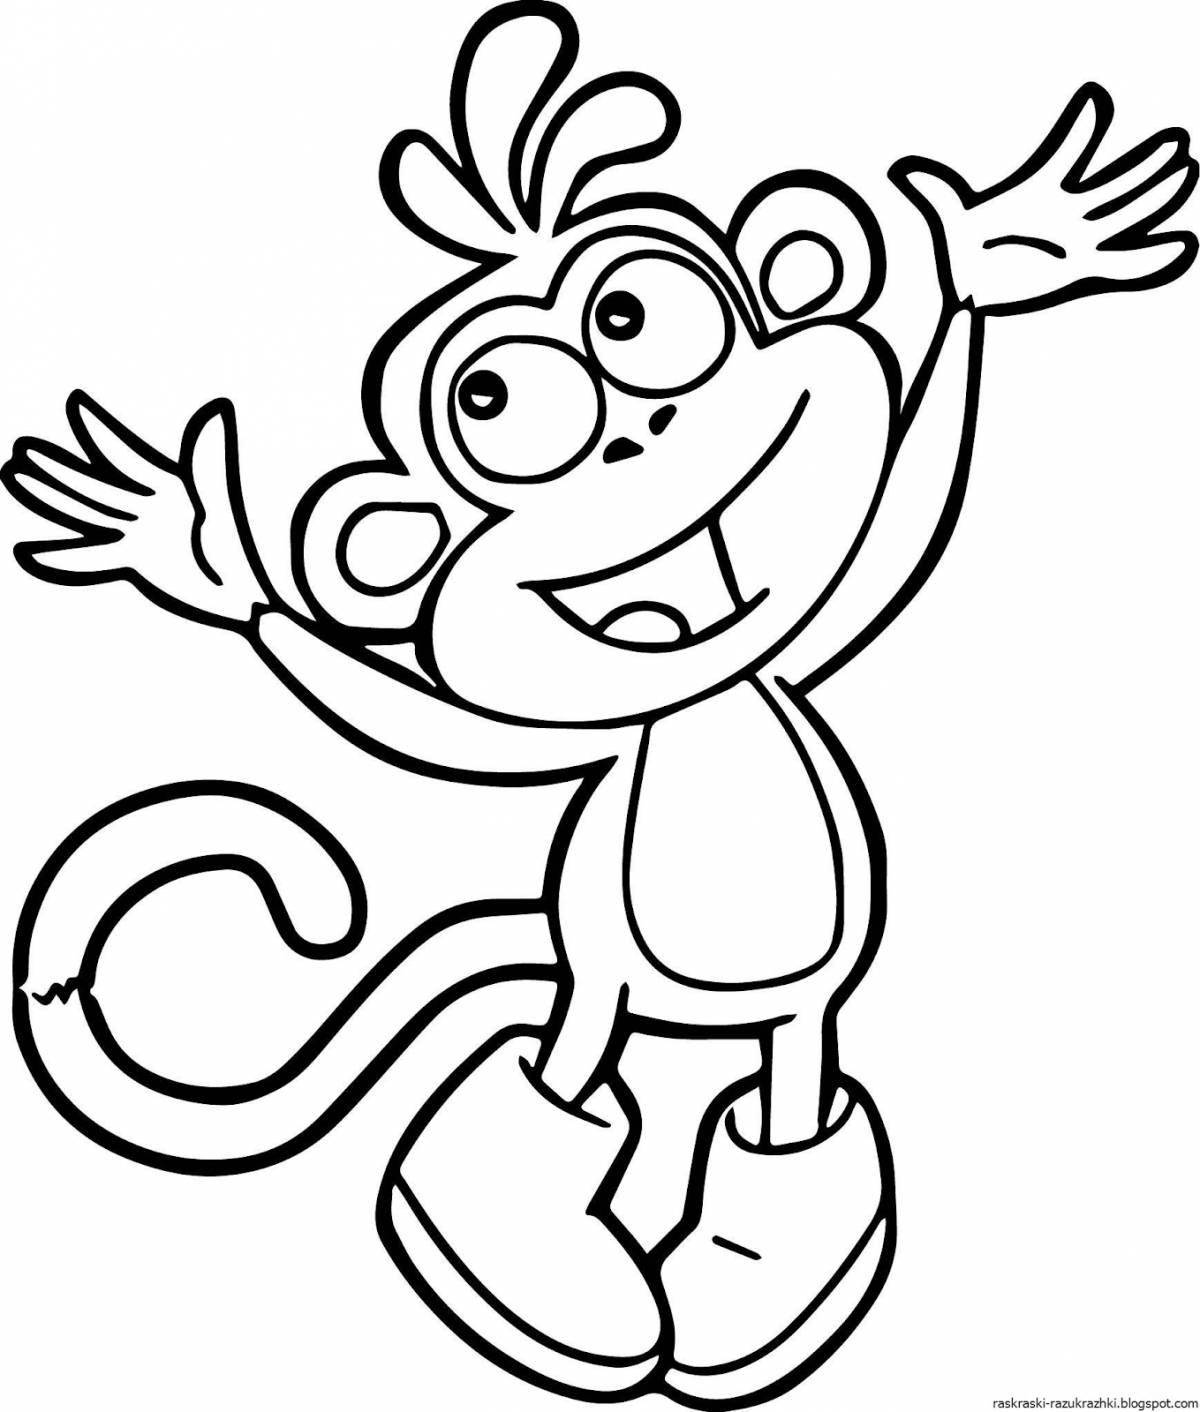 Развлекательная раскраска обезьяна для детей